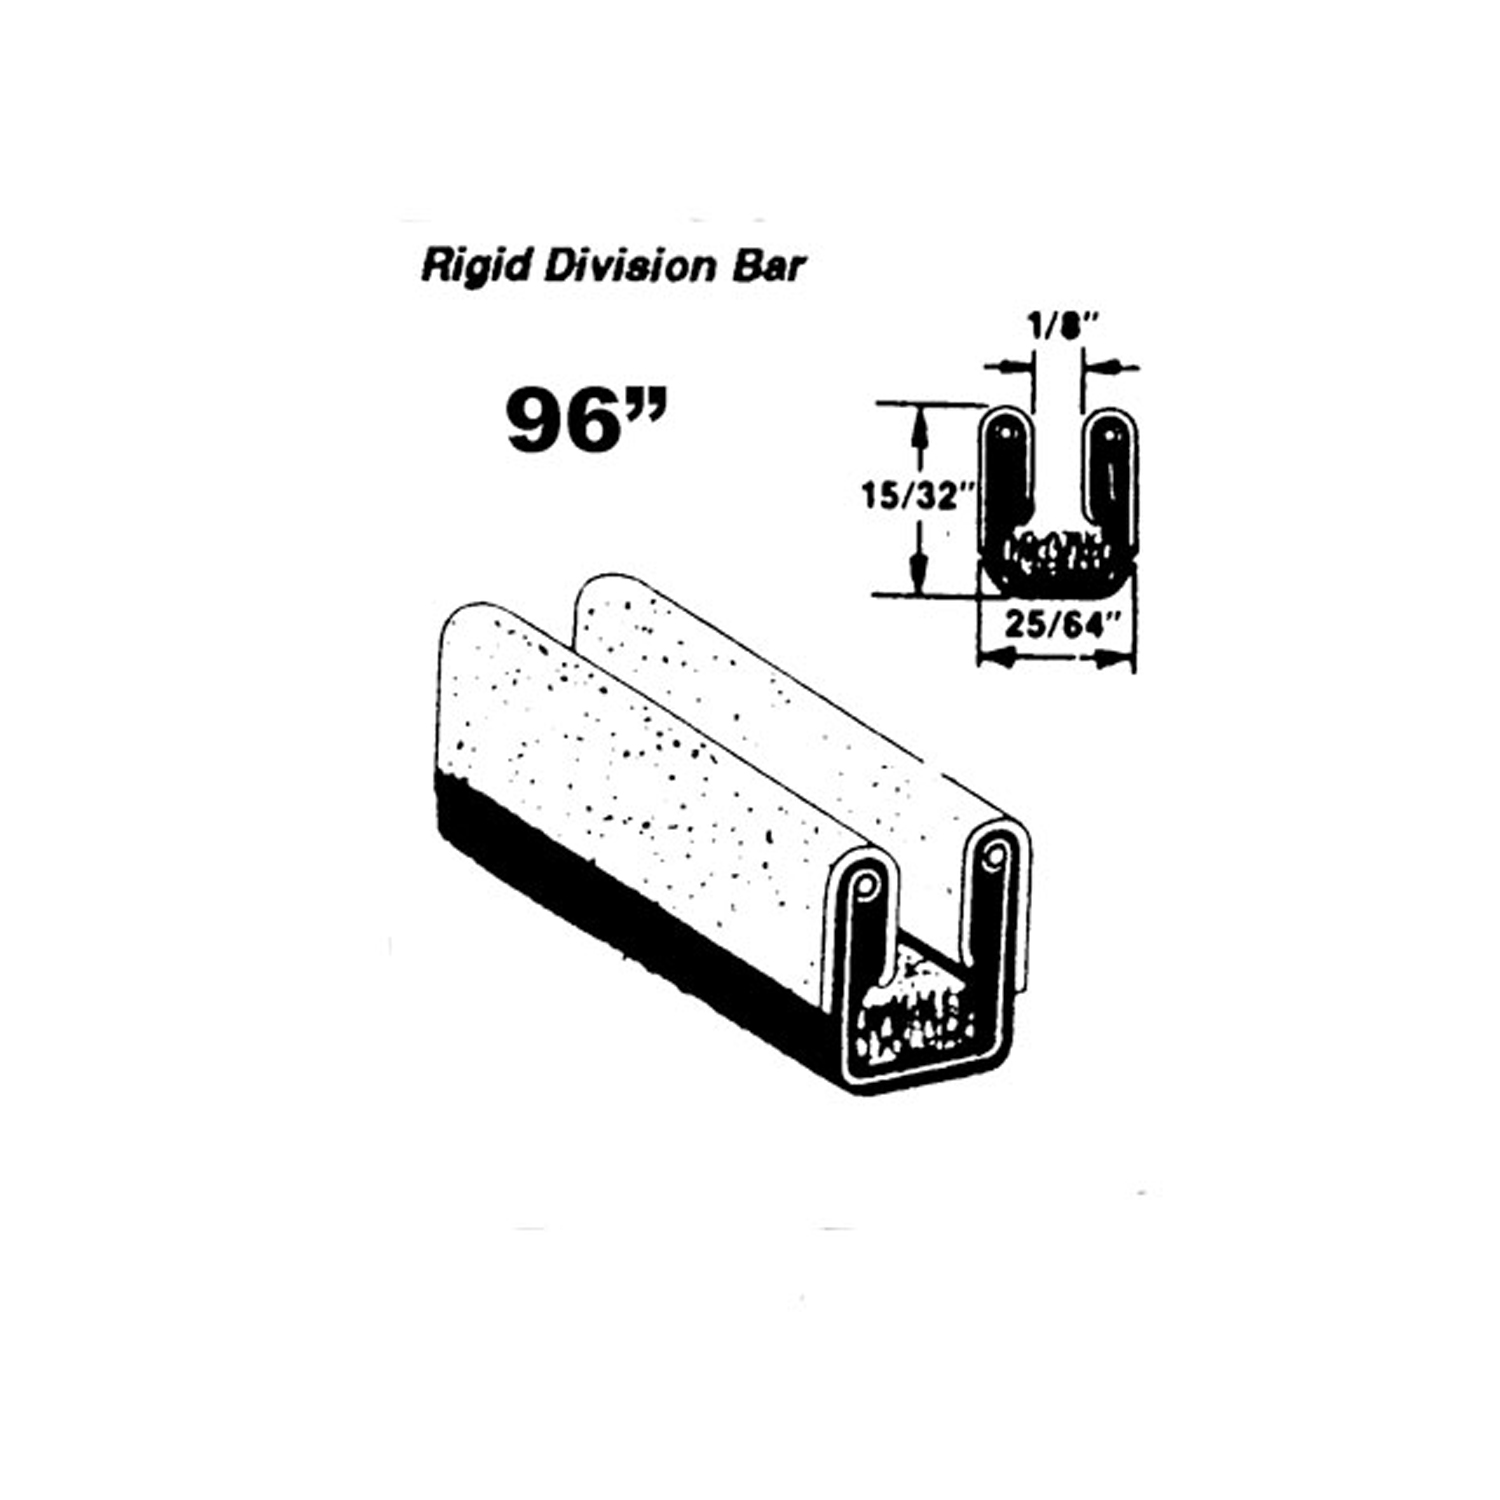 1954 DeSoto Firedome Rigid division-bar run channel-WC 31-96